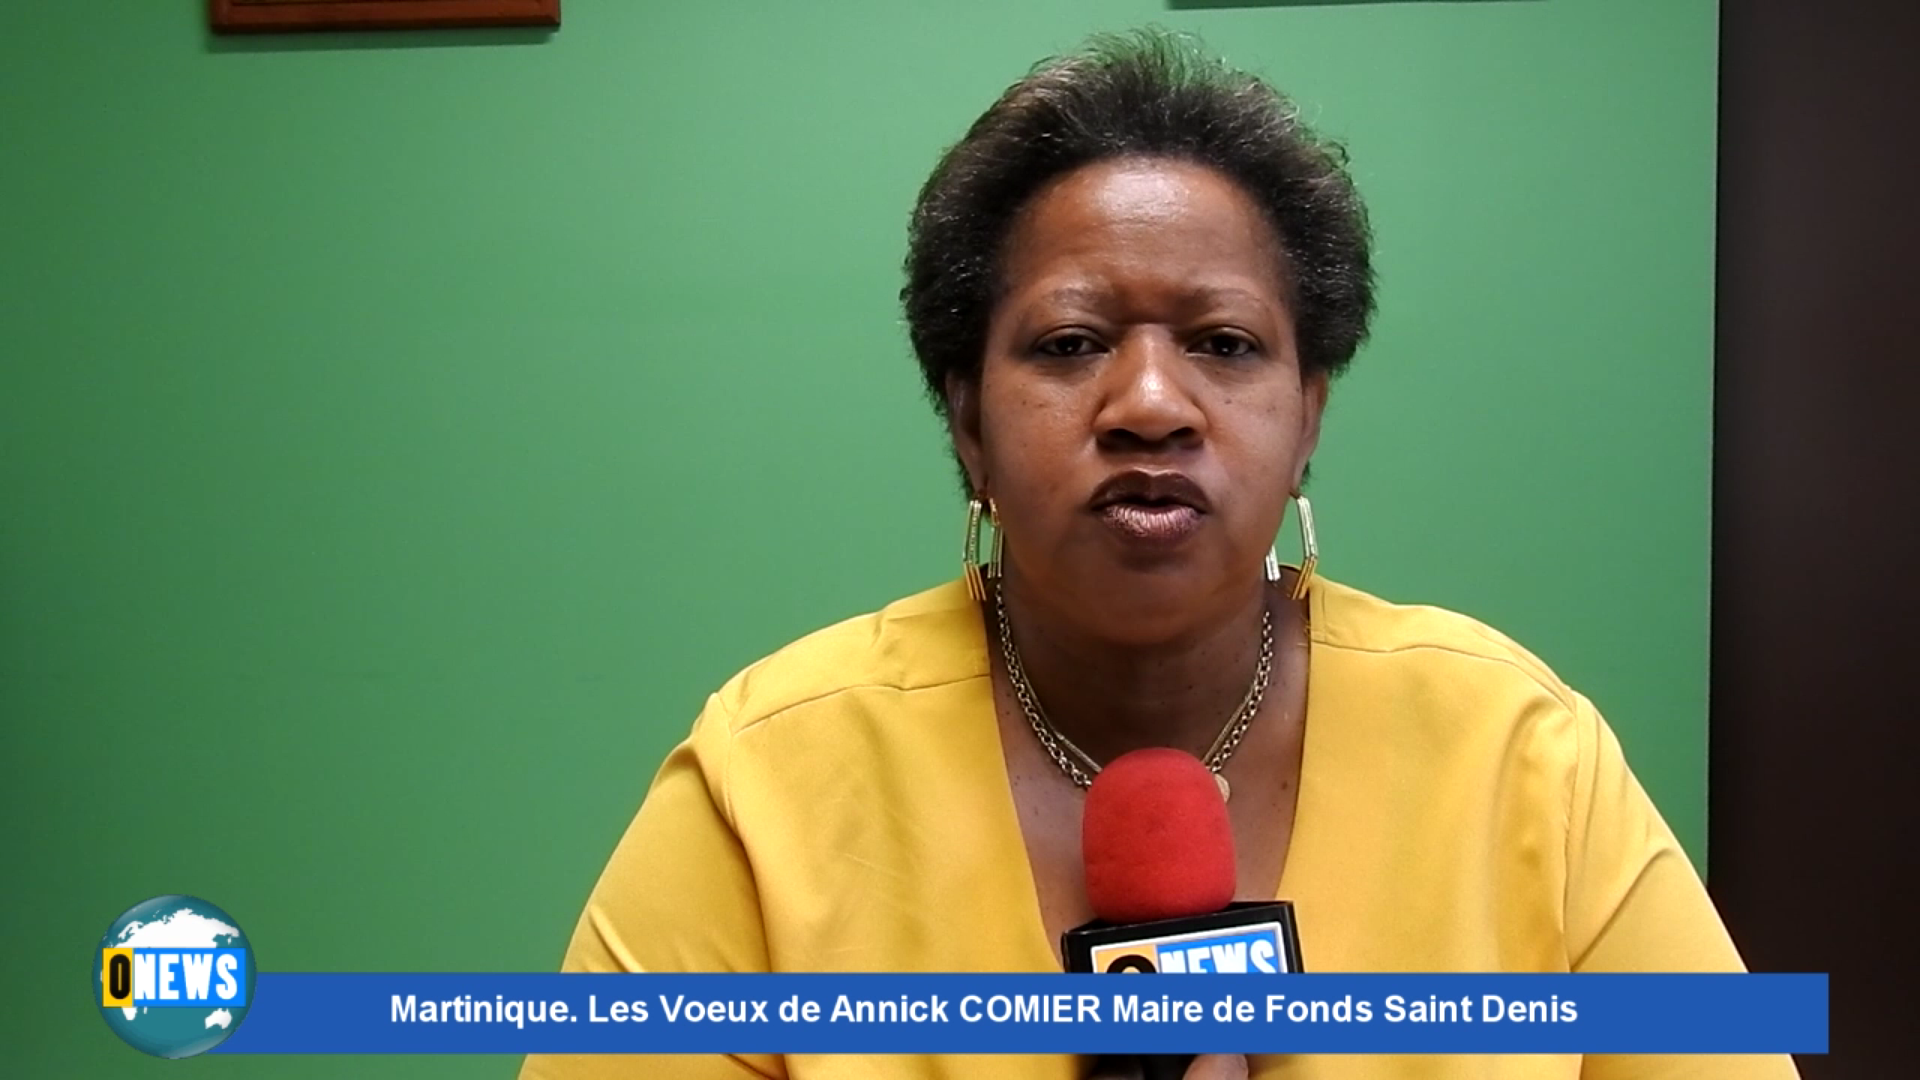 Onews Martinique. Les voeux de Annick COMMIER Maire de fonds Saint Denis